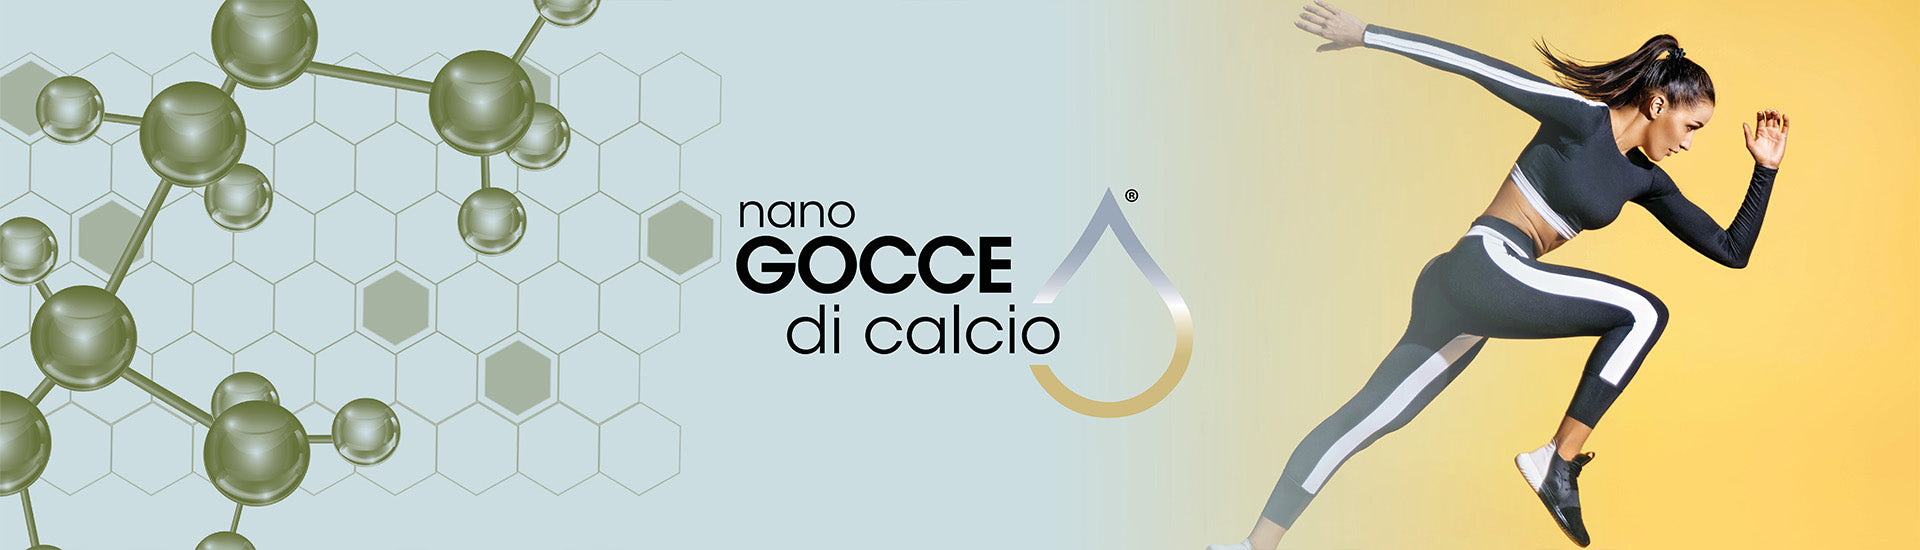 L'Esclusivo CALCIO COLLOIDALE - Integratore Colloidale Puro Spray - Nano Gocce BIOMED 300 ppm